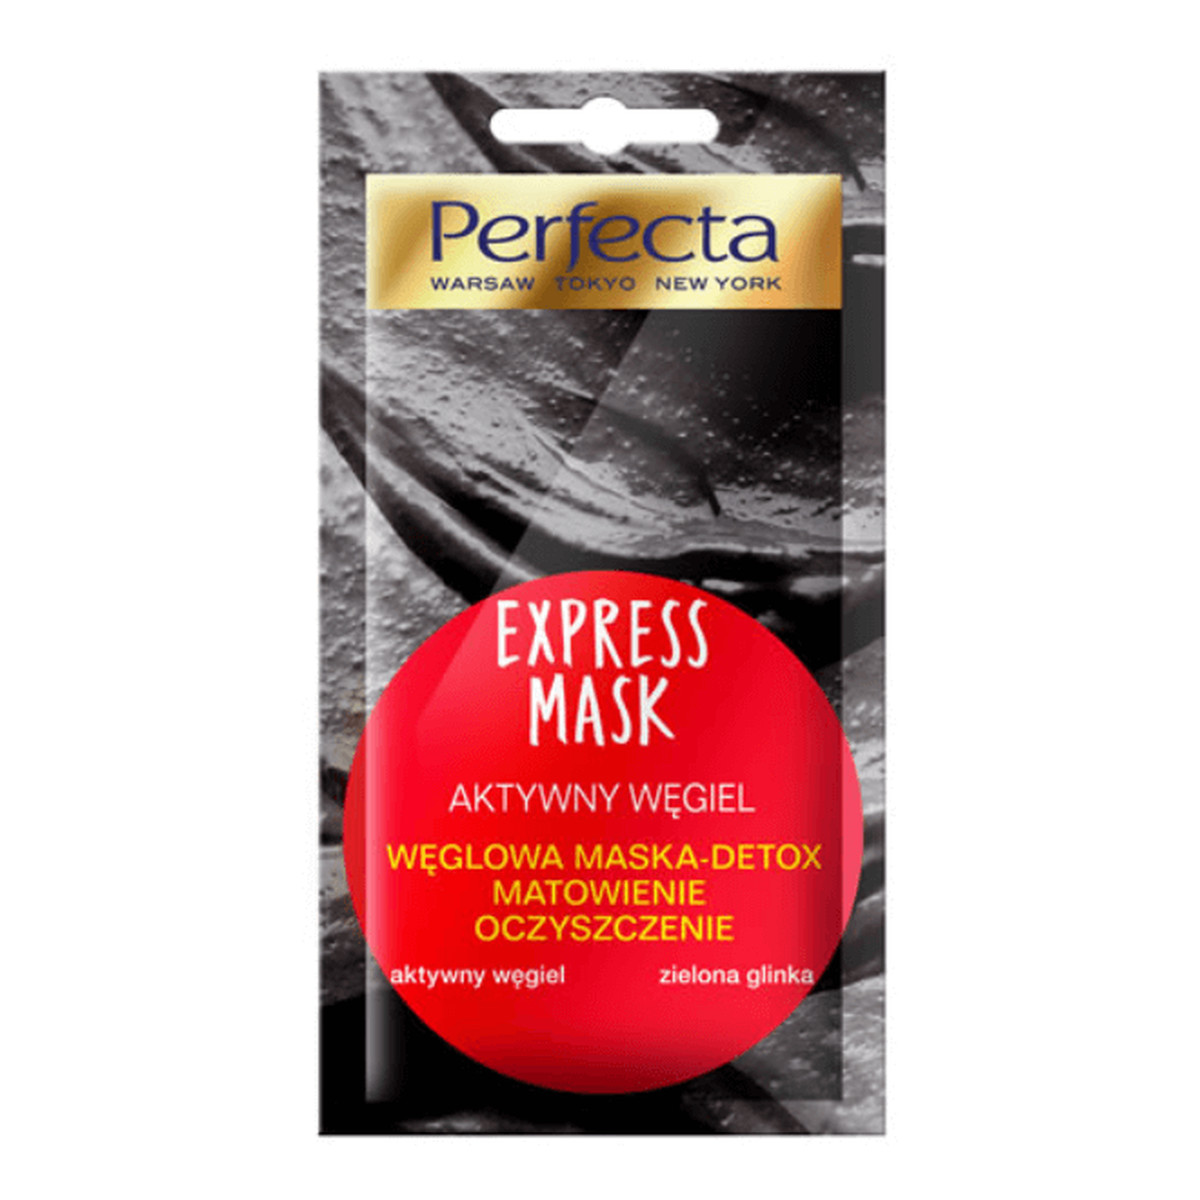 Perfecta Express Mask AKTYWNY WĘGIEL węglowa MASKA-DETOX Matowienie Oczyszczenie 10ml